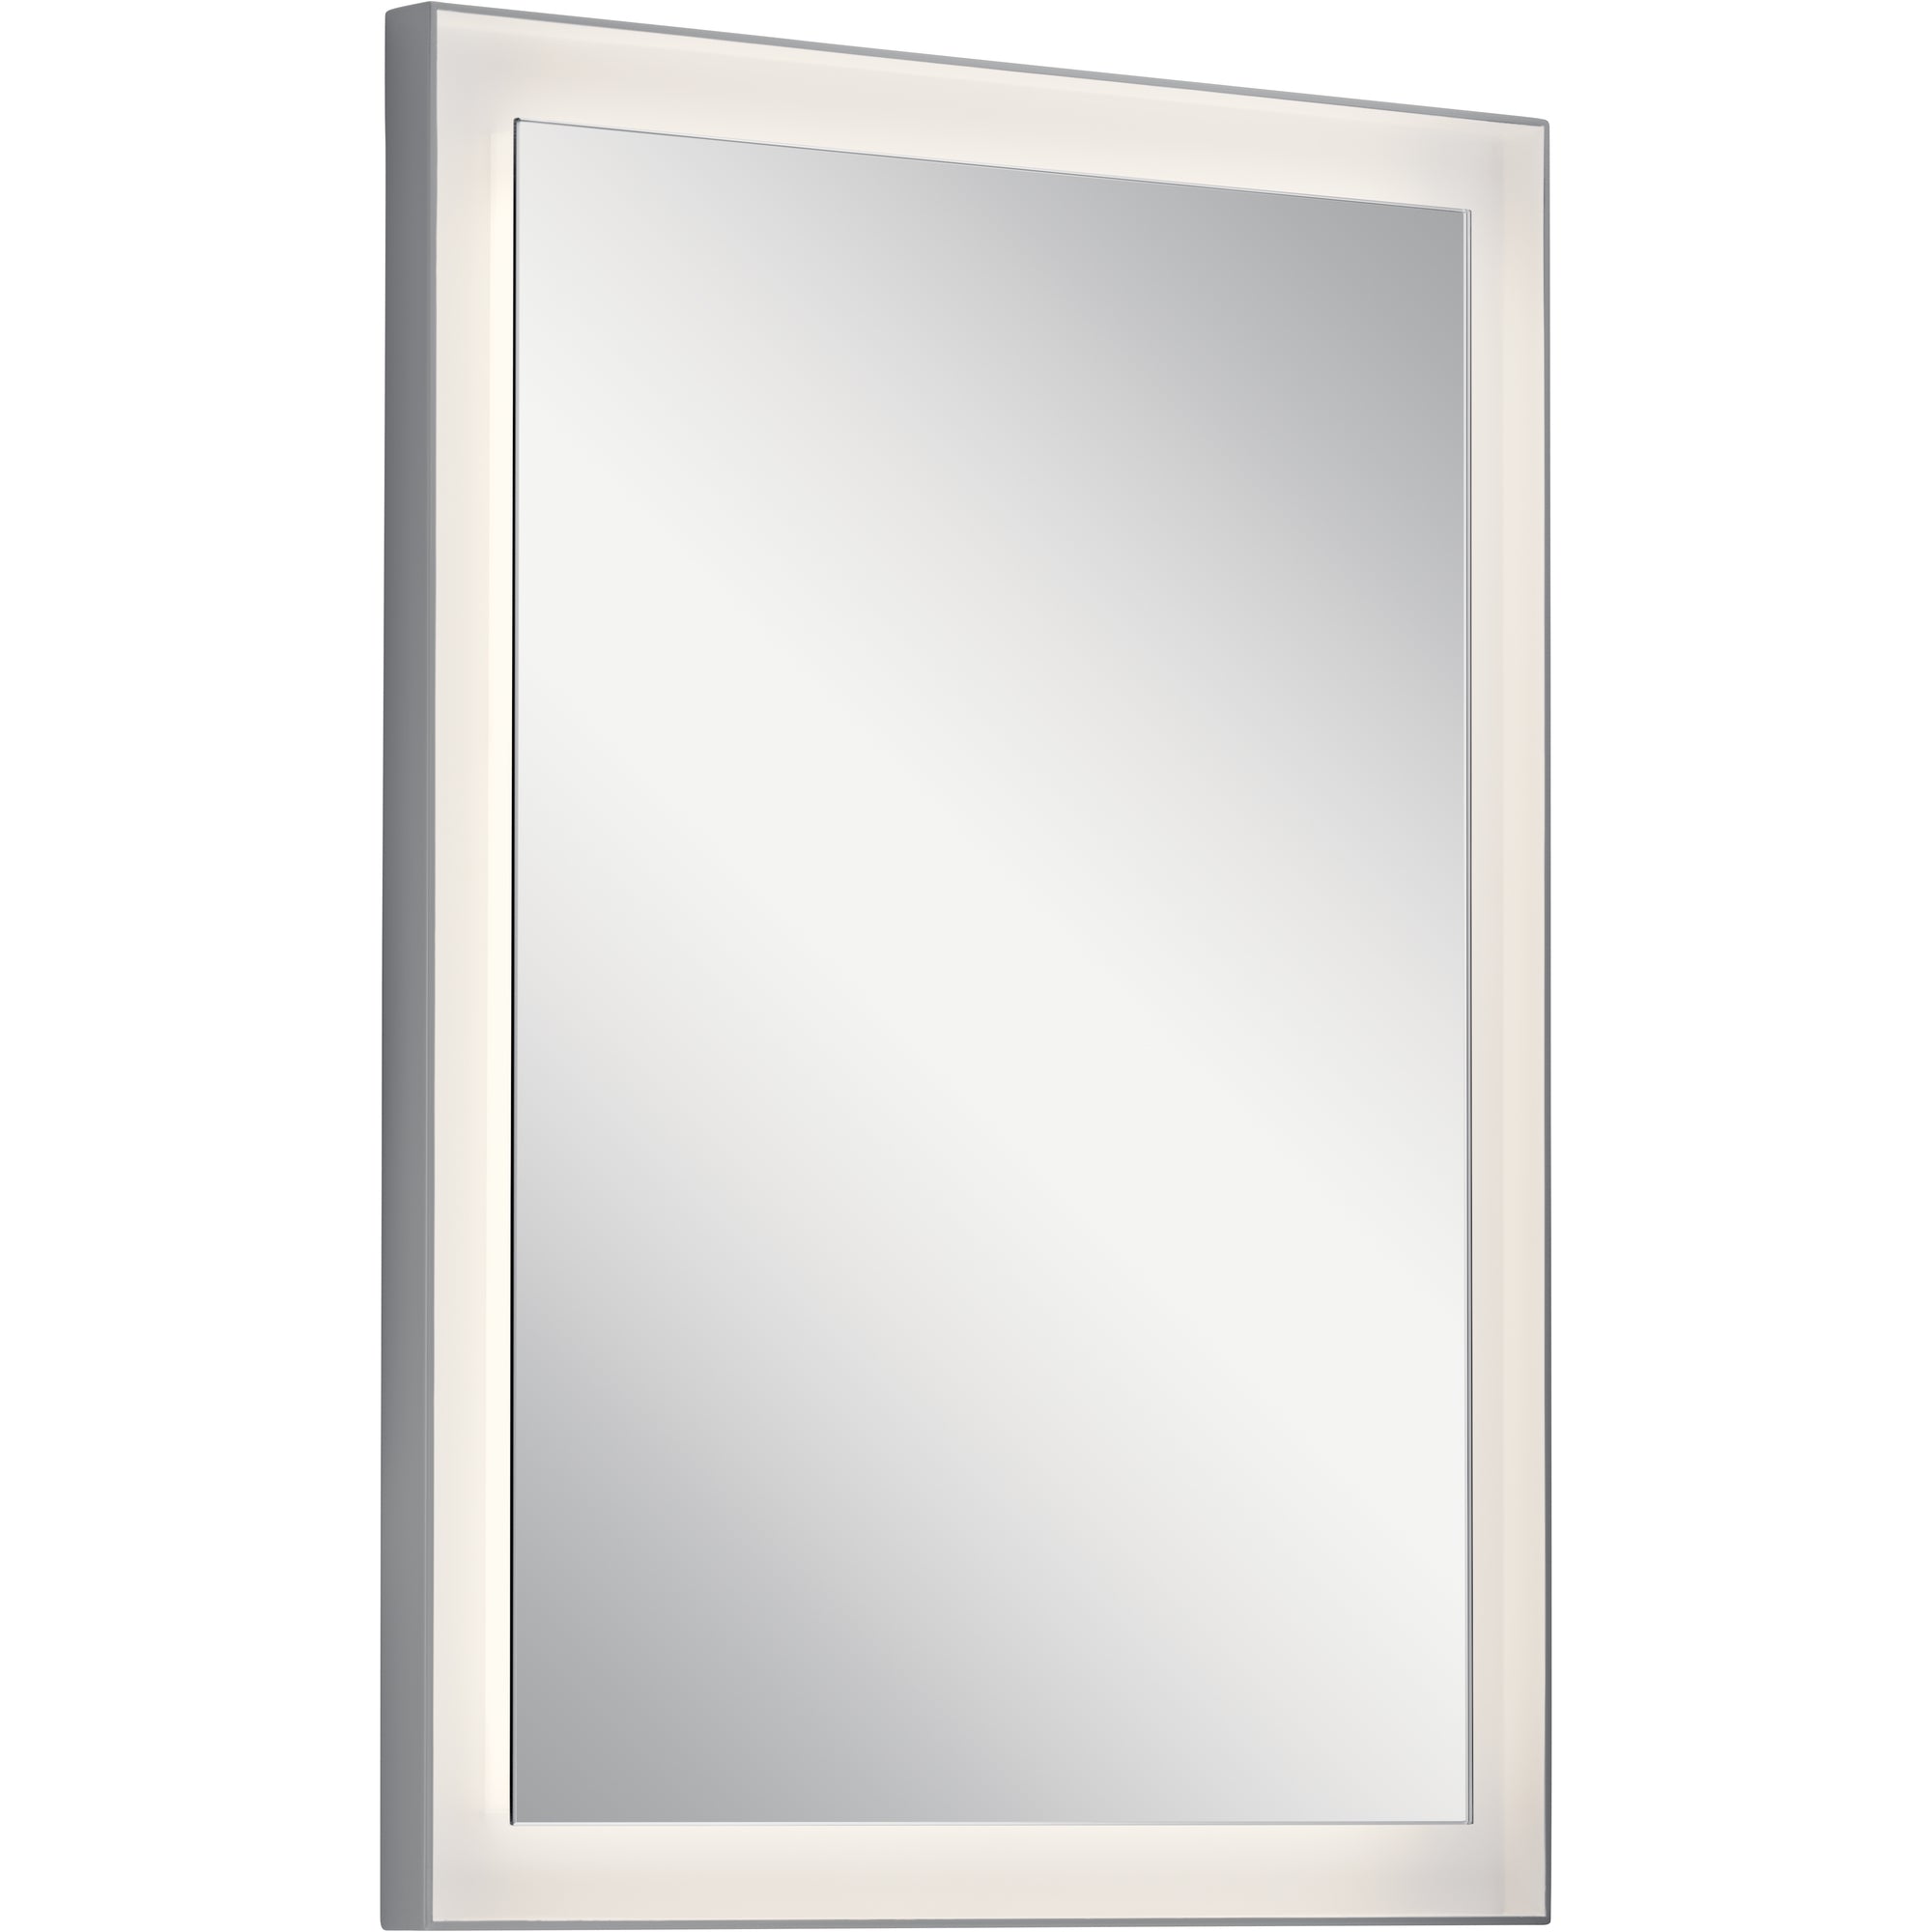 RYAME Lighting mirror Silver - 84168 | ELAN